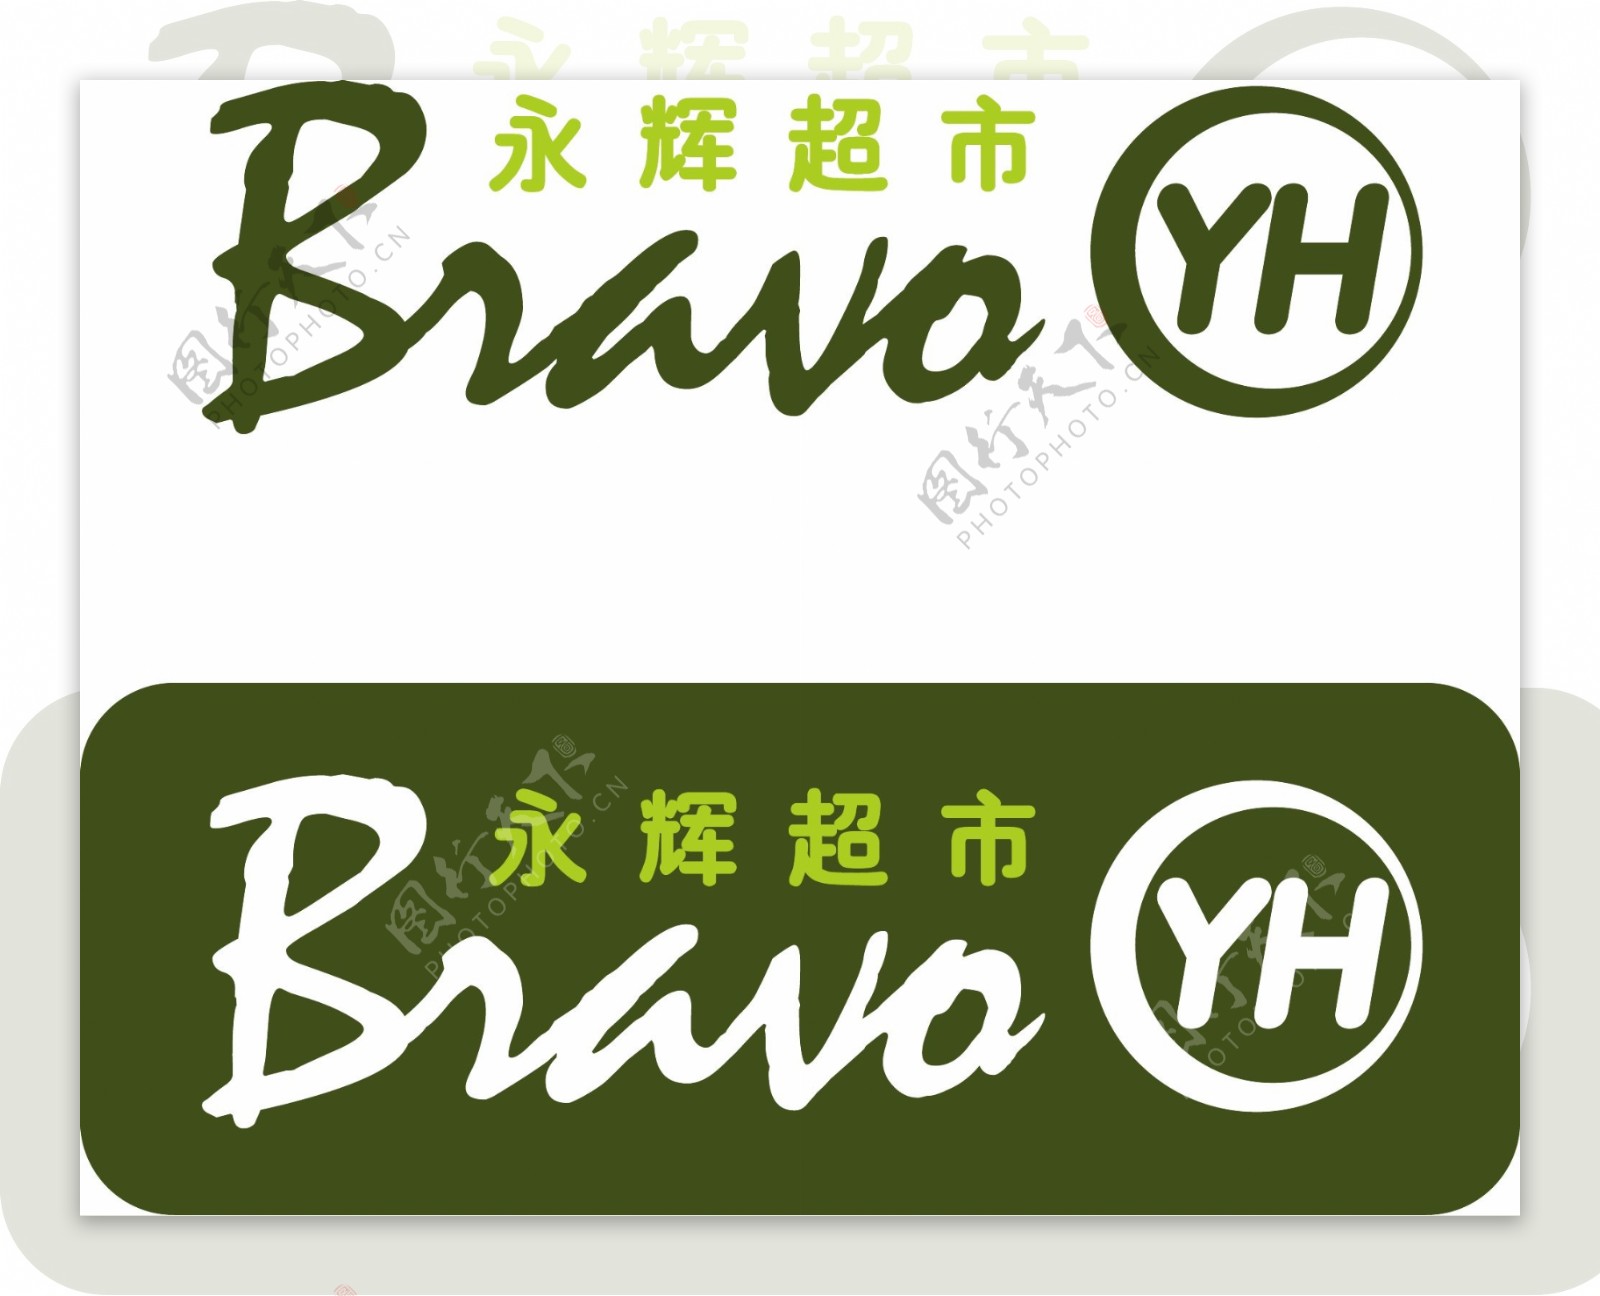 永辉Bravo超市logo